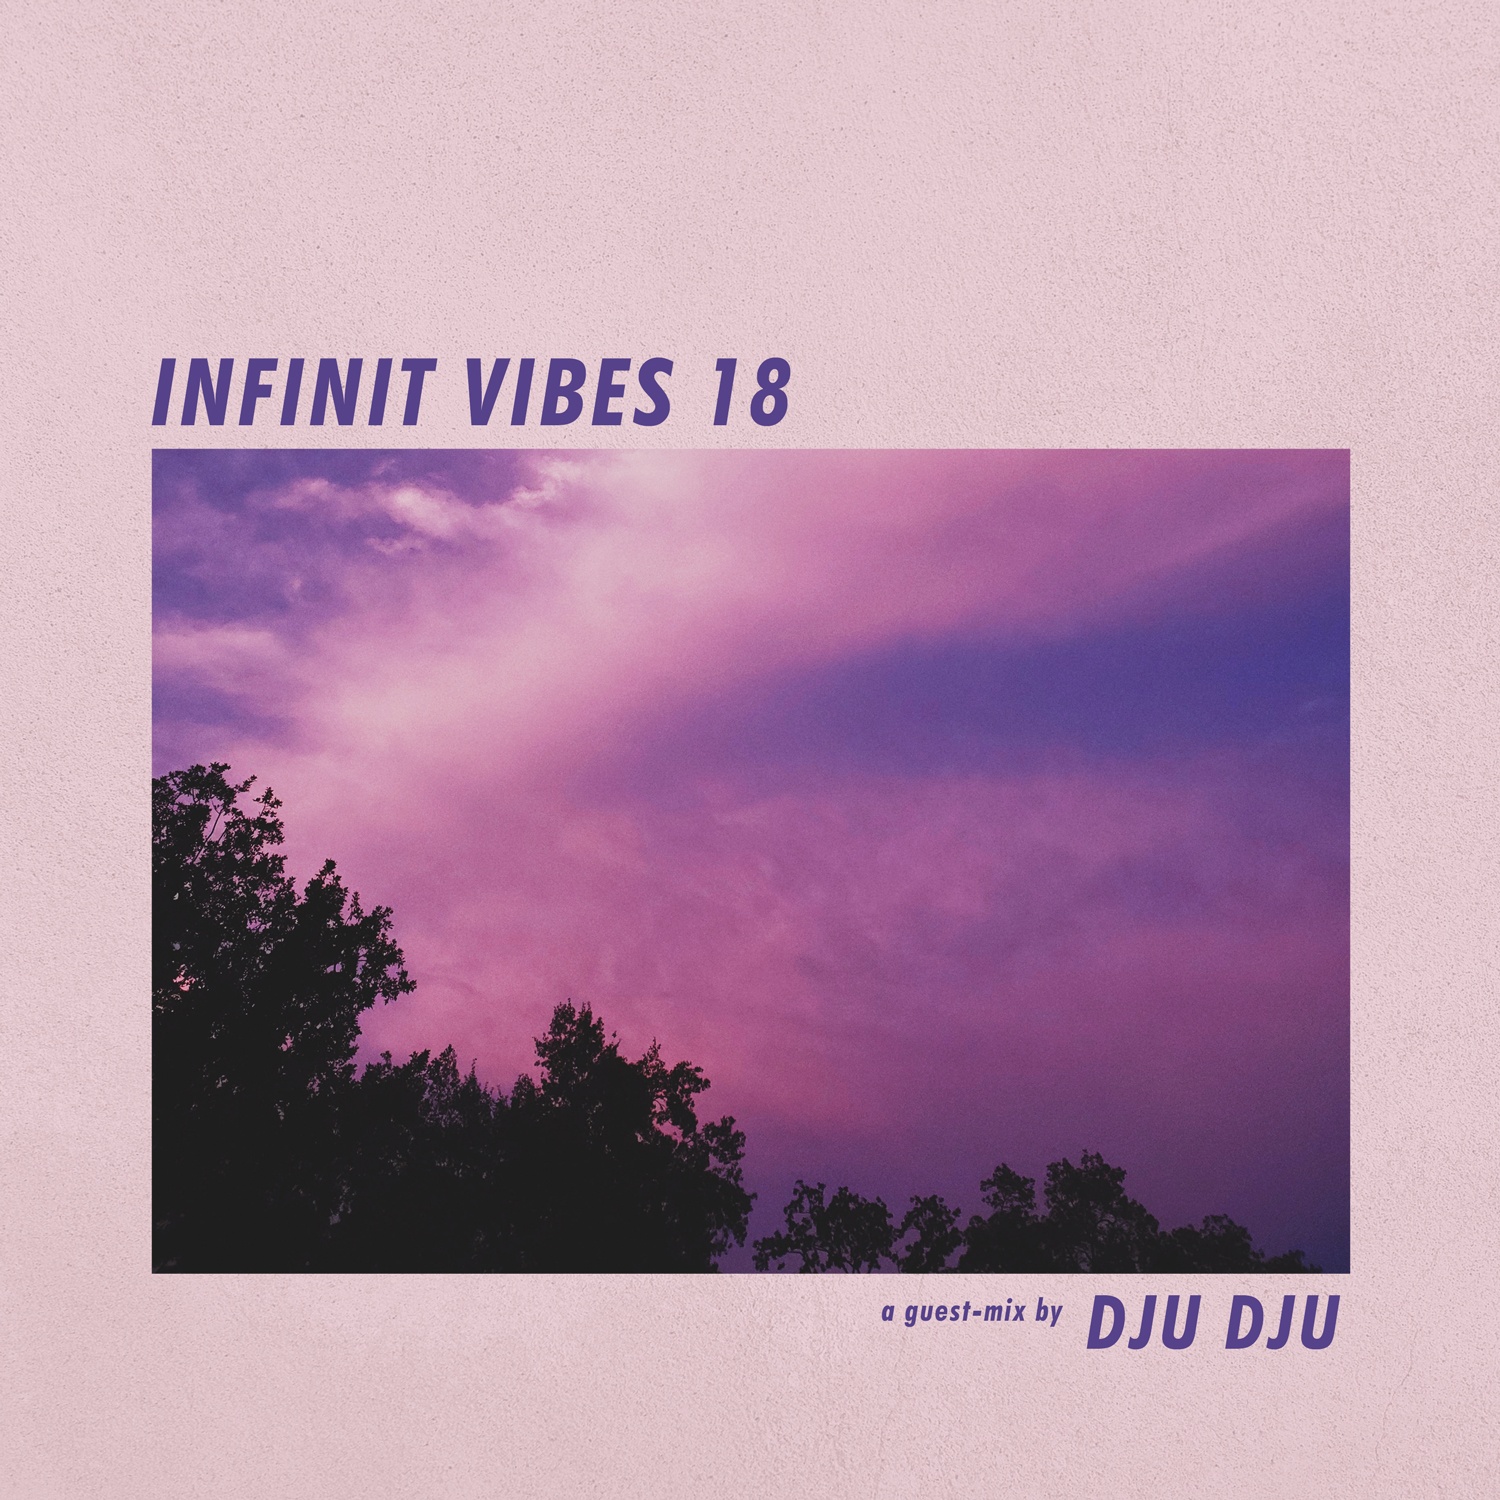 INFINIT VIBES 18 – A guest-mix by DJU DJU